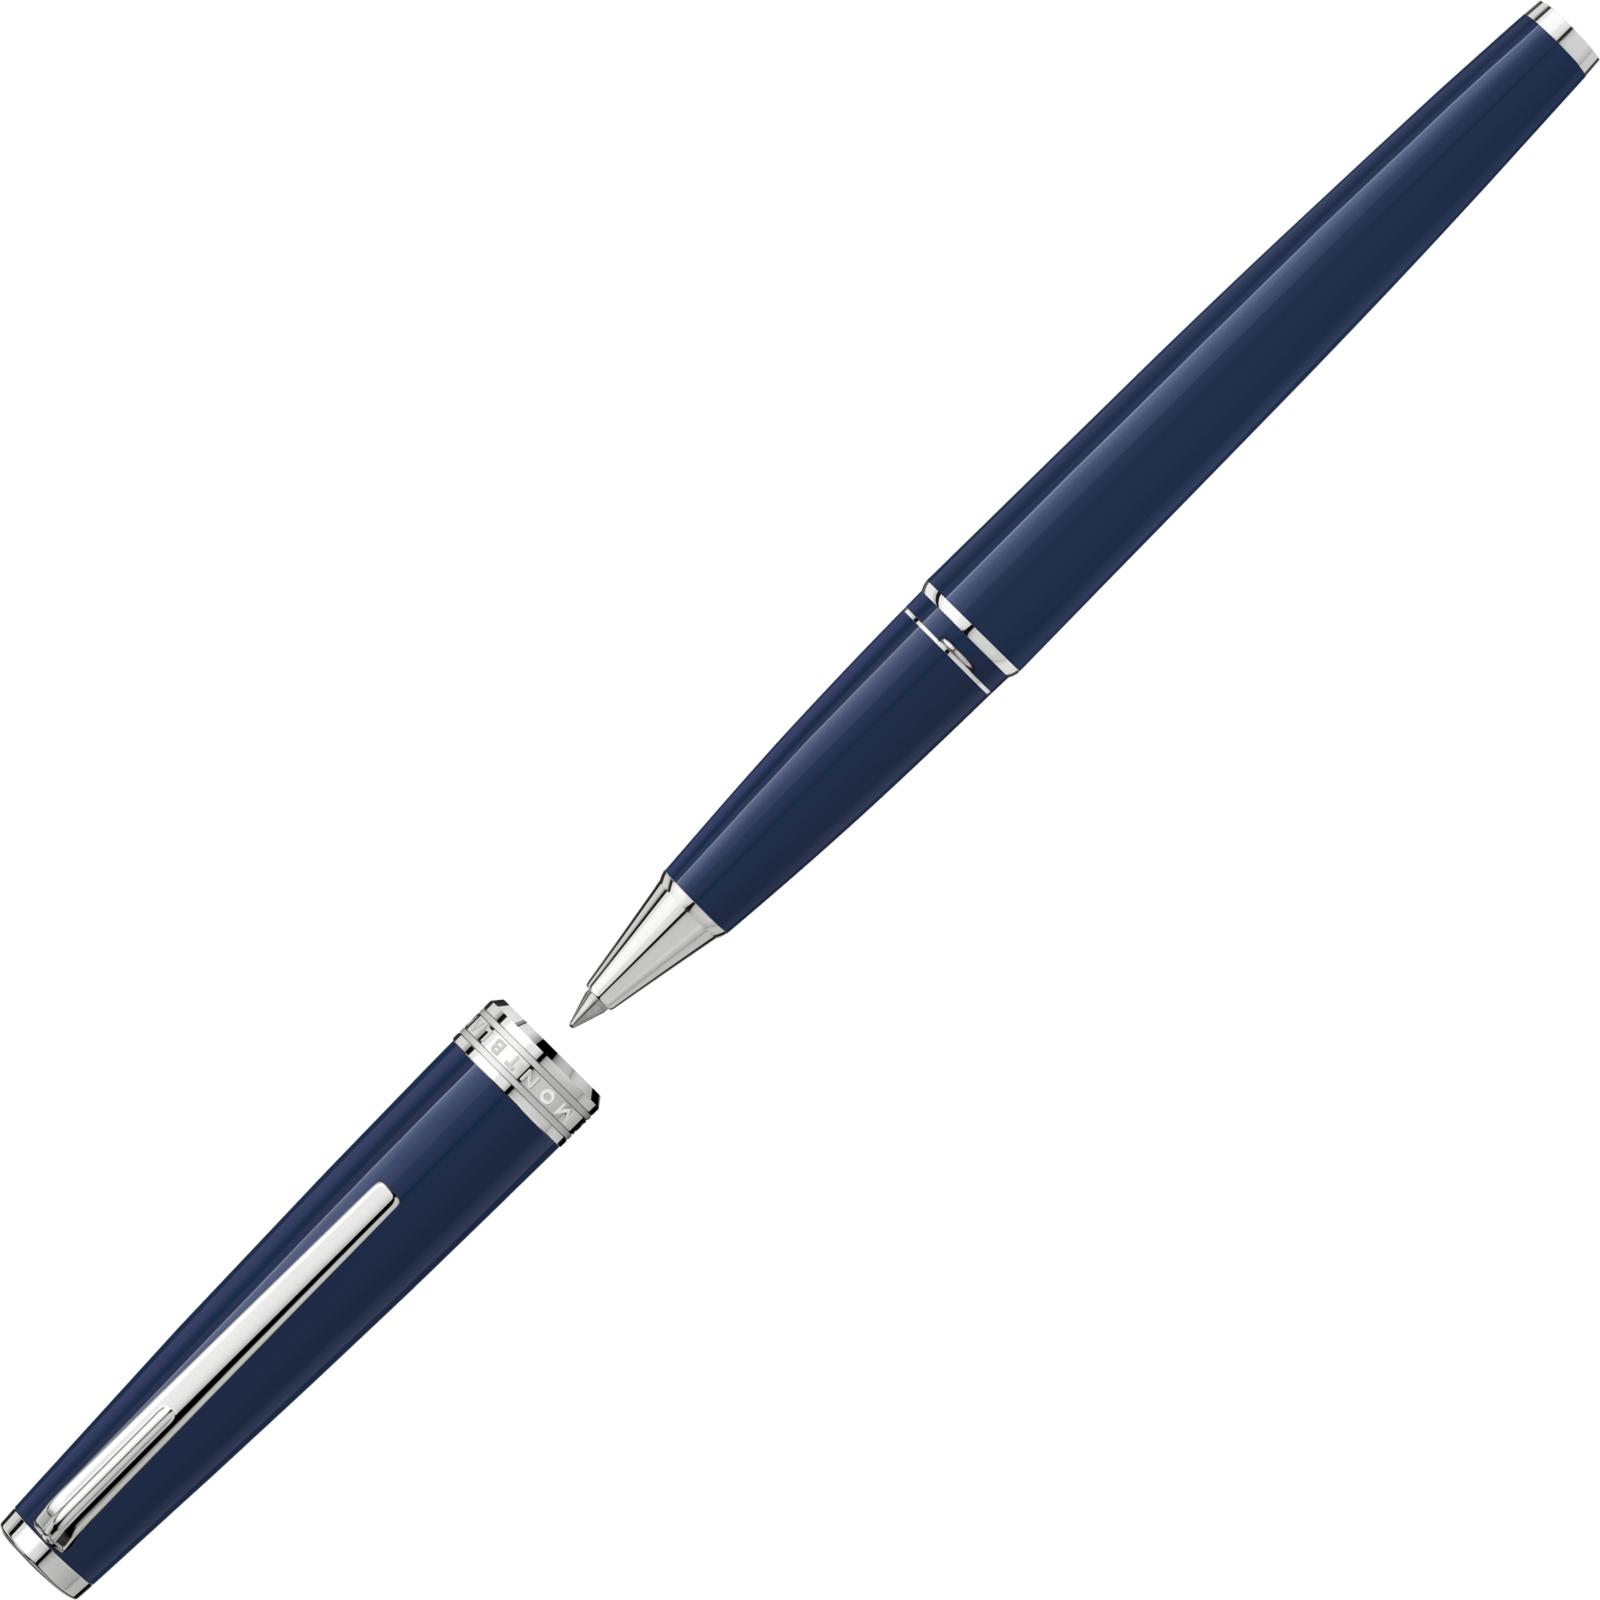 Pen clipart flair pen, Pen flair pen Transparent FREE for download on